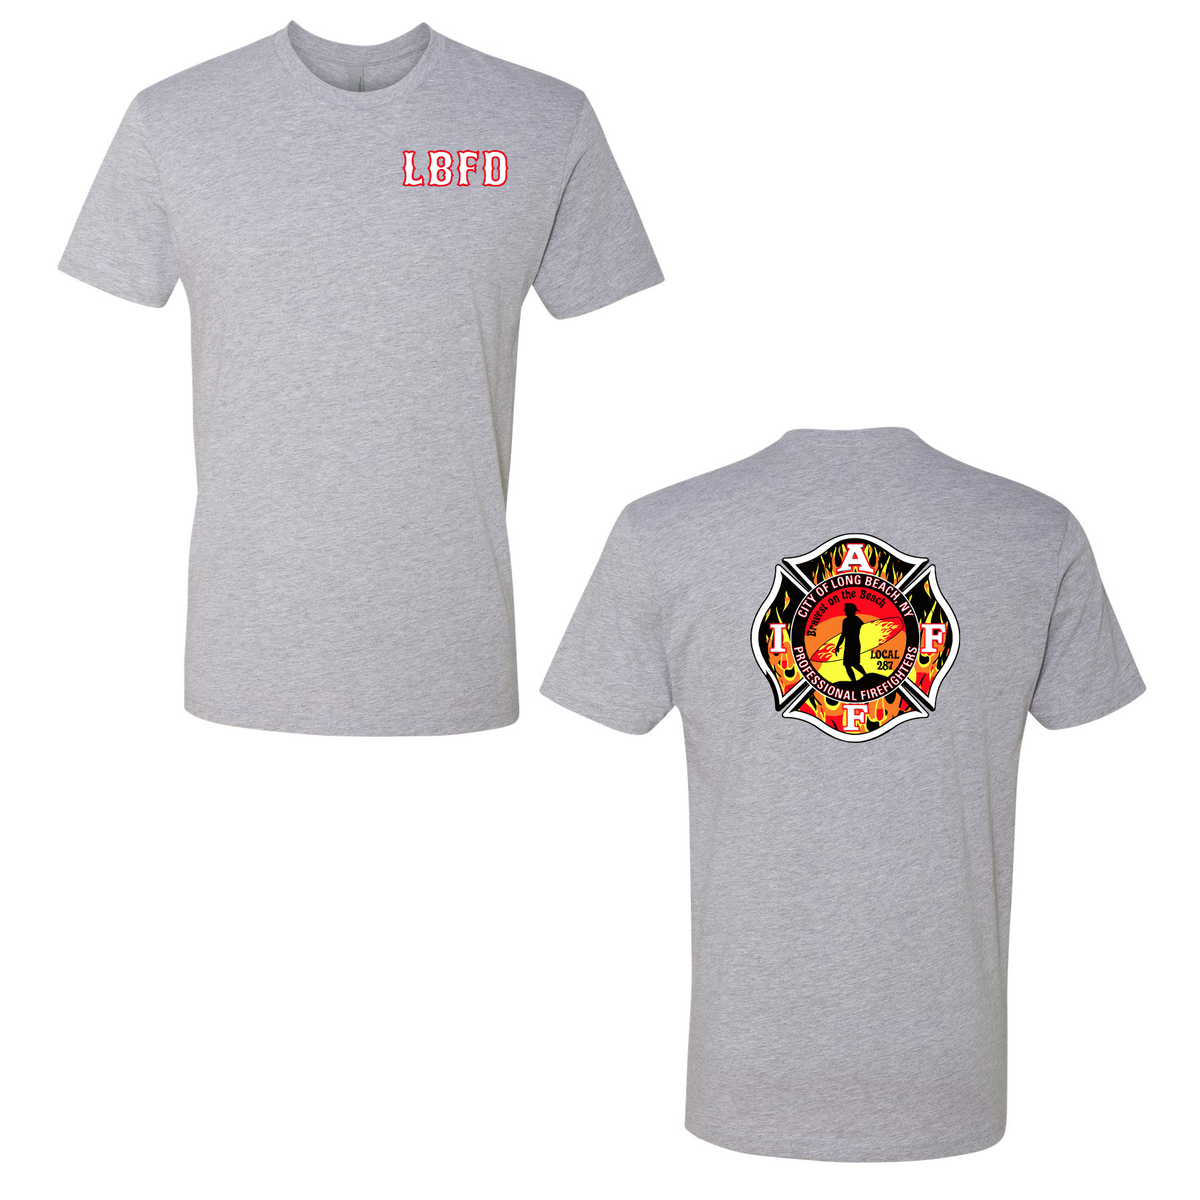 Long Beach Professional Firefighters T-Shirt